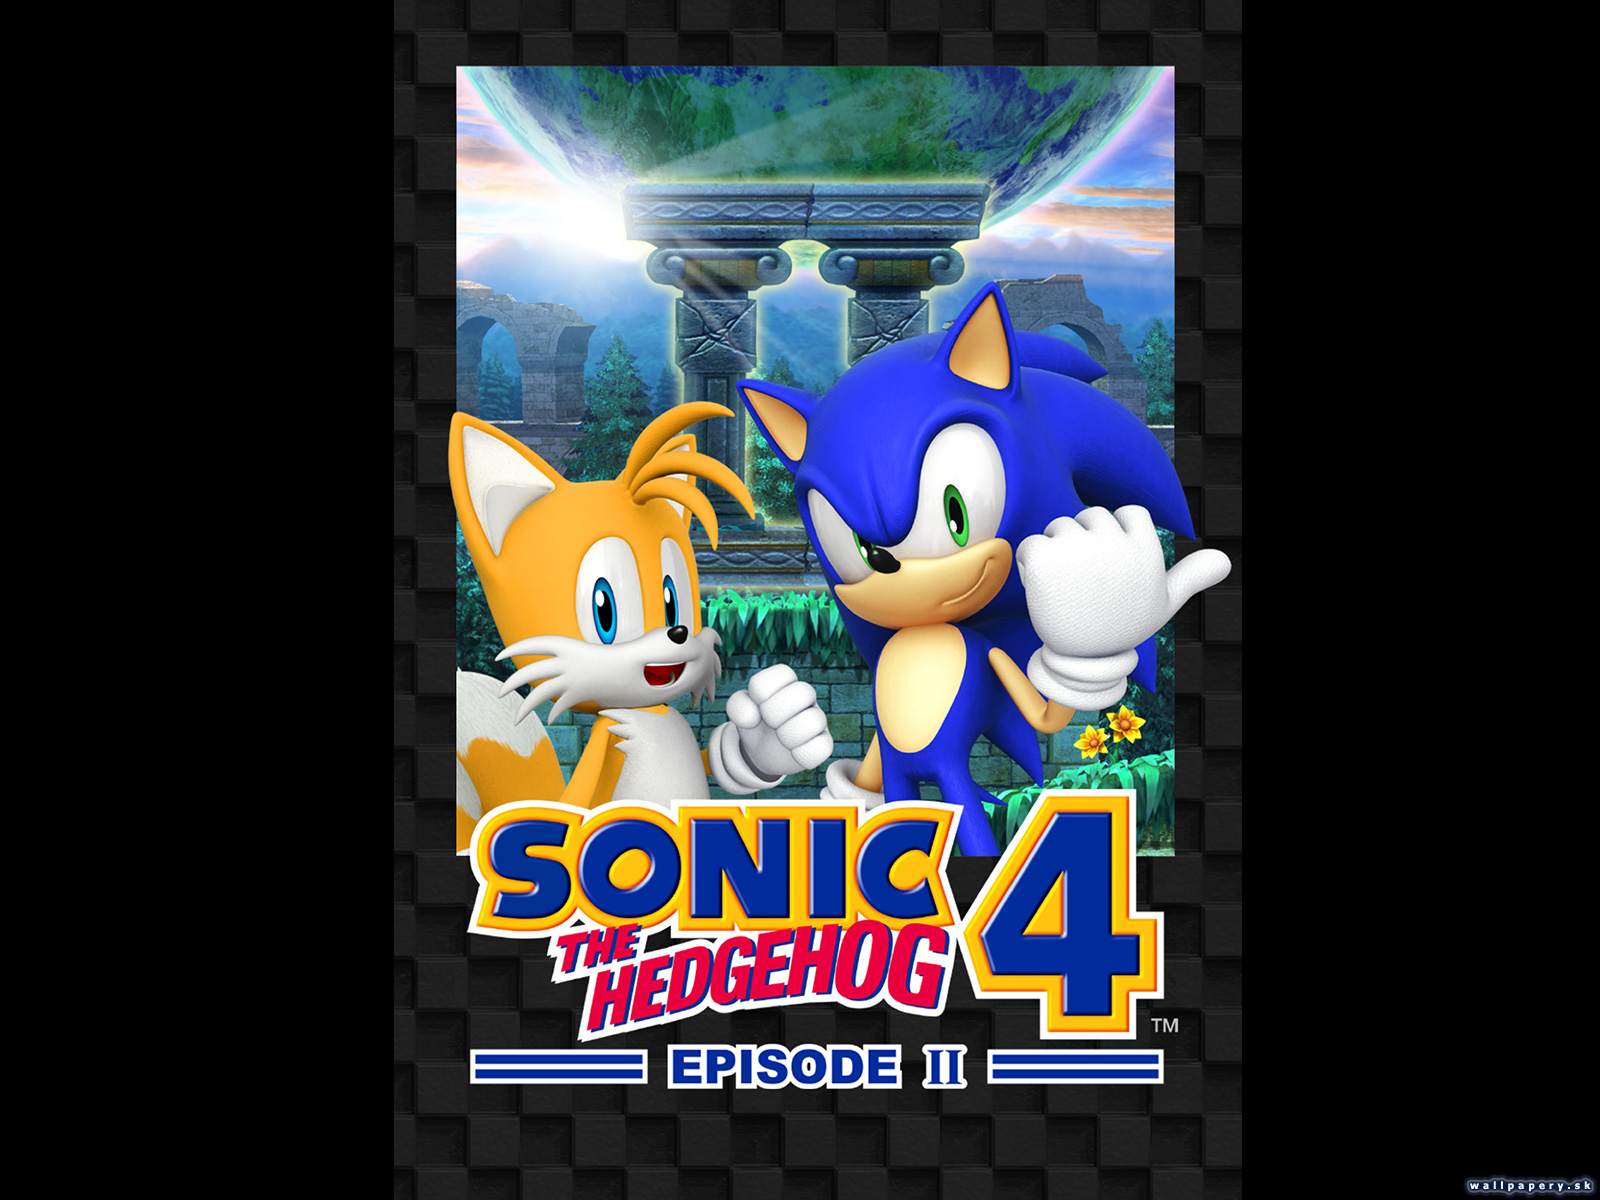 Sonic the Hedgehog 4: Episode II - wallpaper 2